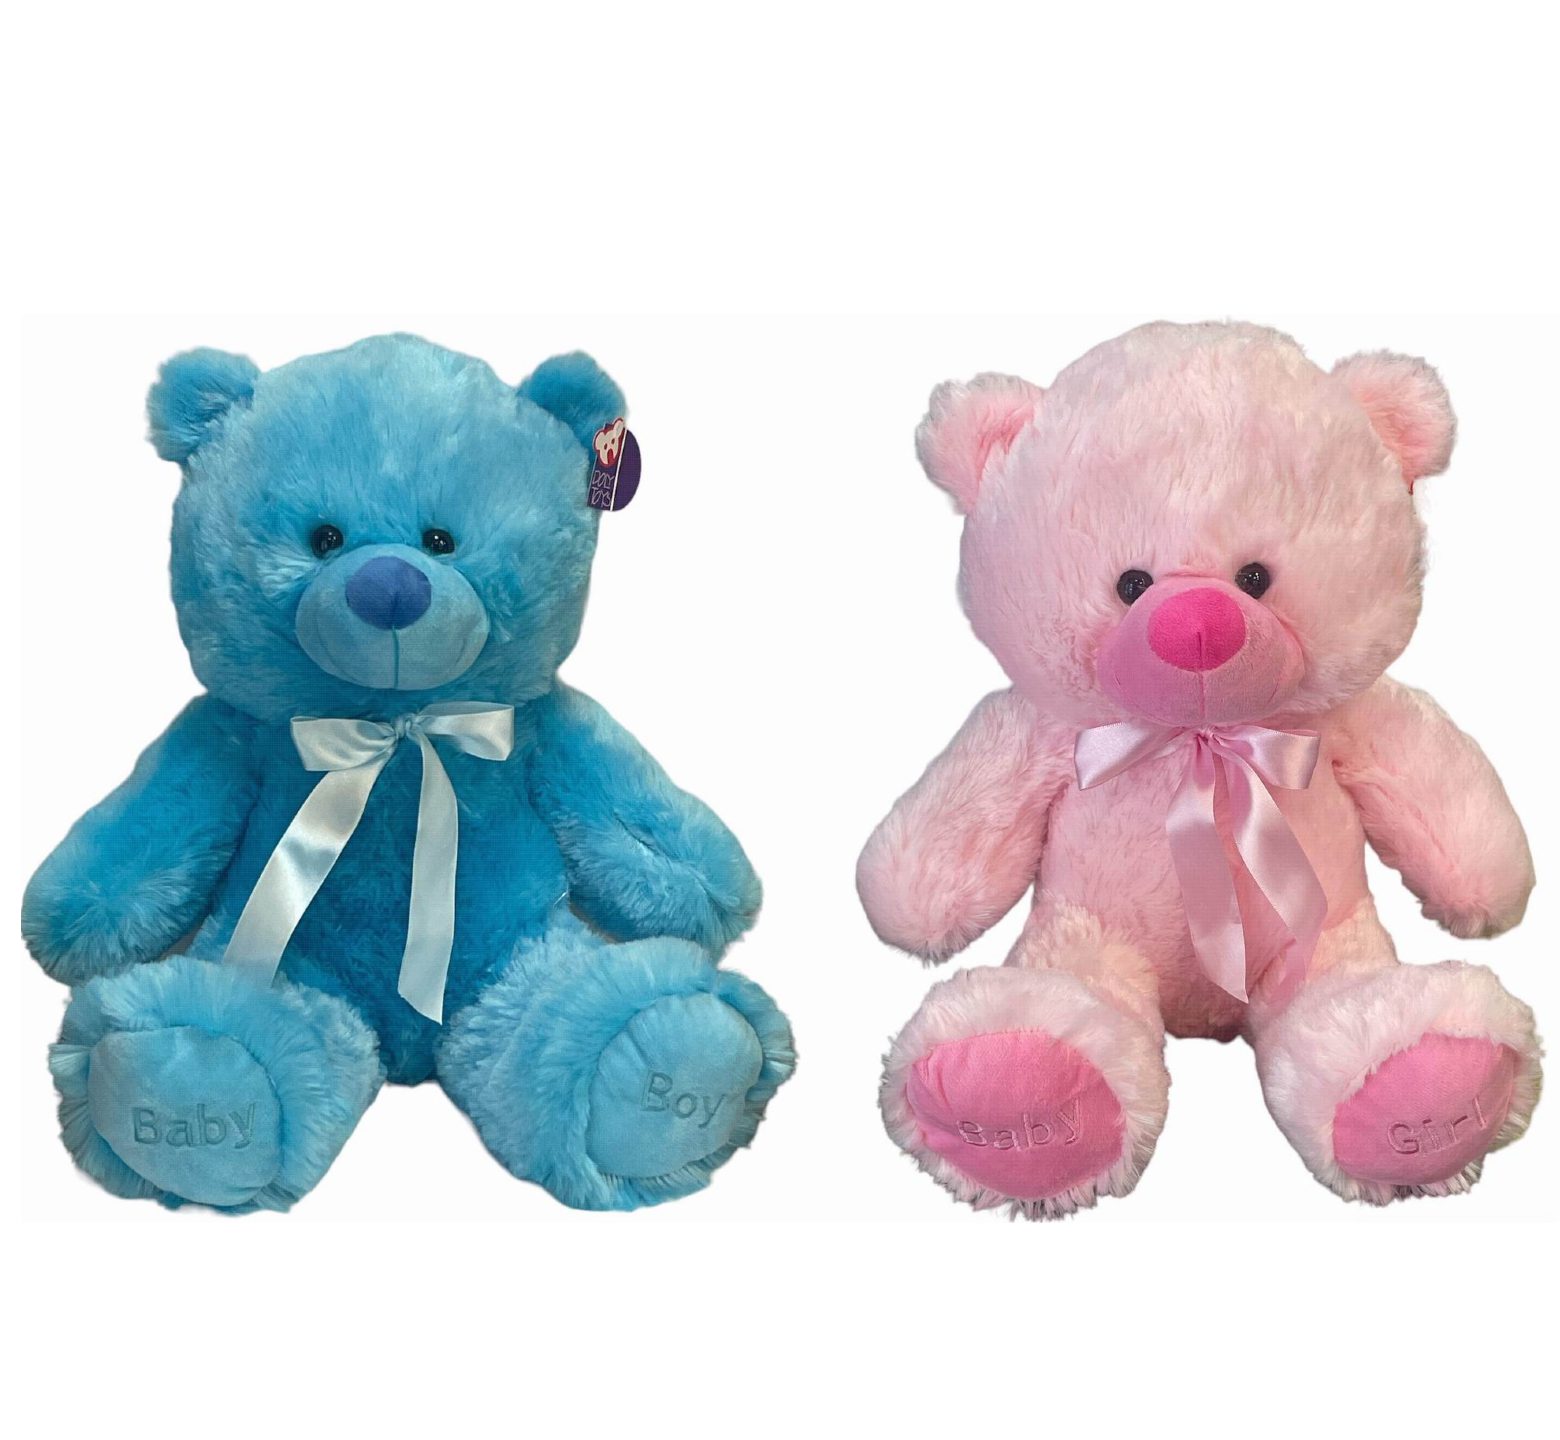 Λούτρινος καθιστός αρκούδος 35 εκ ύψος σε 2 χρώματα μπλε ή ροζ με σατεν παπιόν και στις πατούσες γράφει “Baby Boy” ή “Baby Girl”